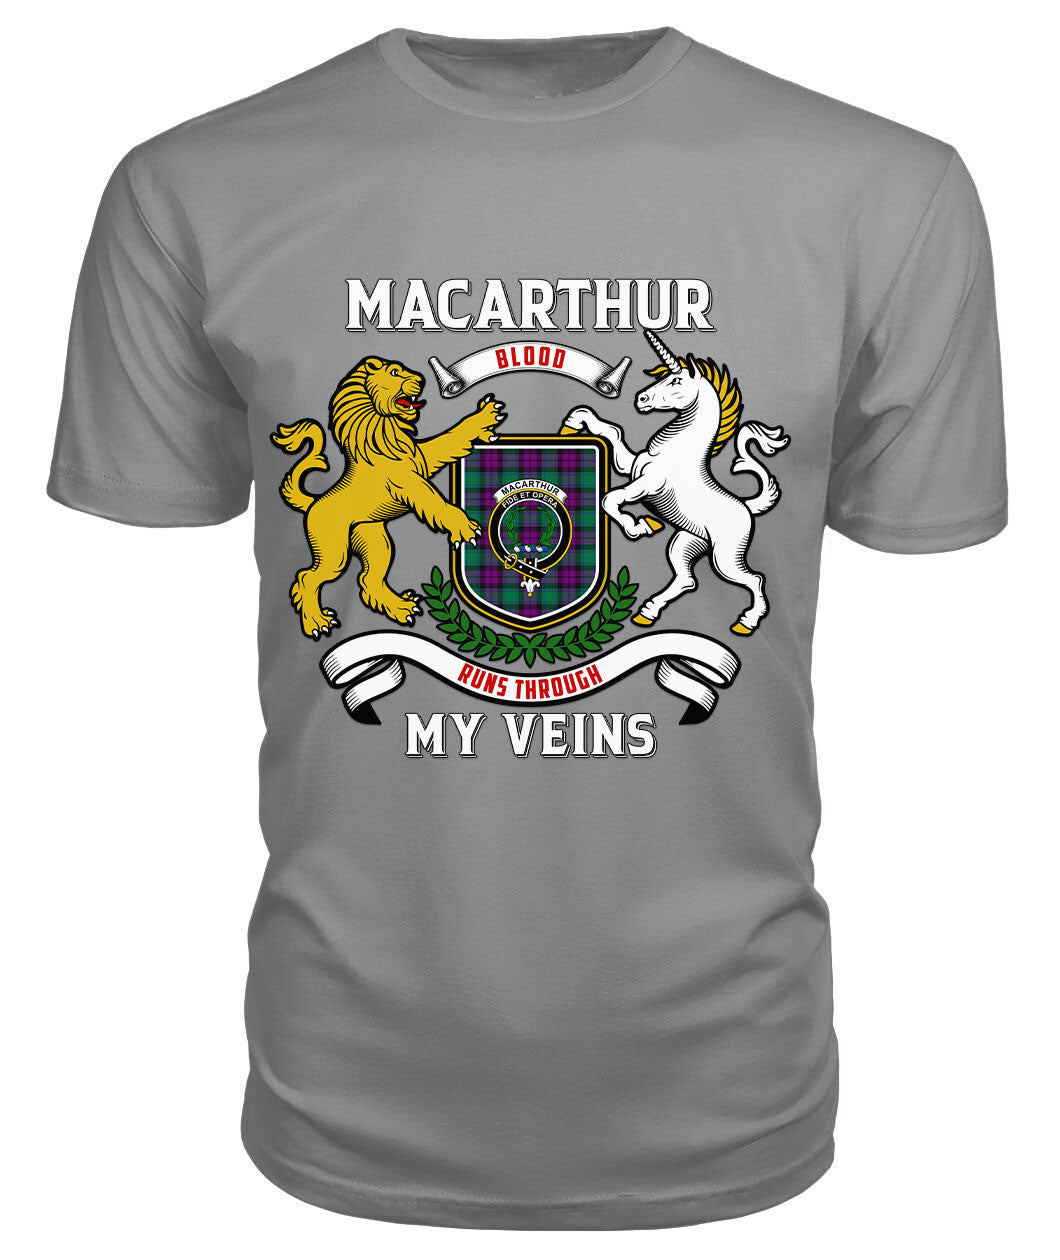 MacArthur – Milton Tartan Crest 2D T-shirt - Blood Runs Through My Veins Style